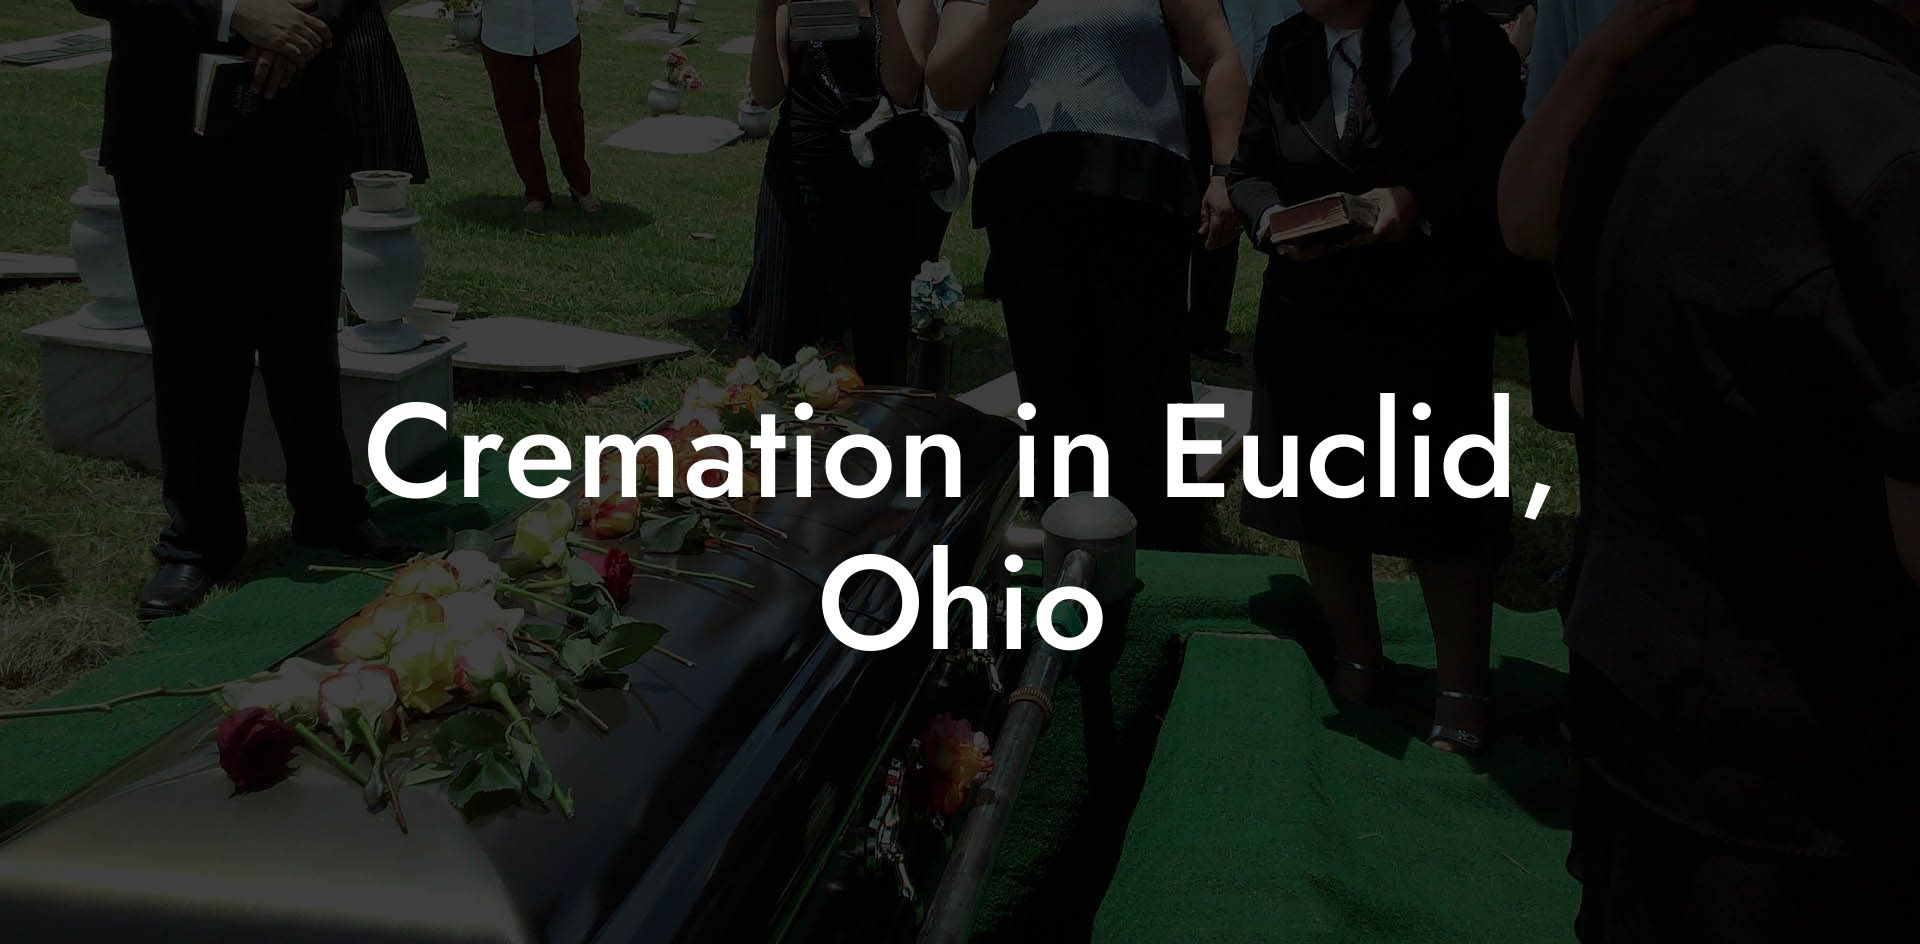 Cremation in Euclid, Ohio